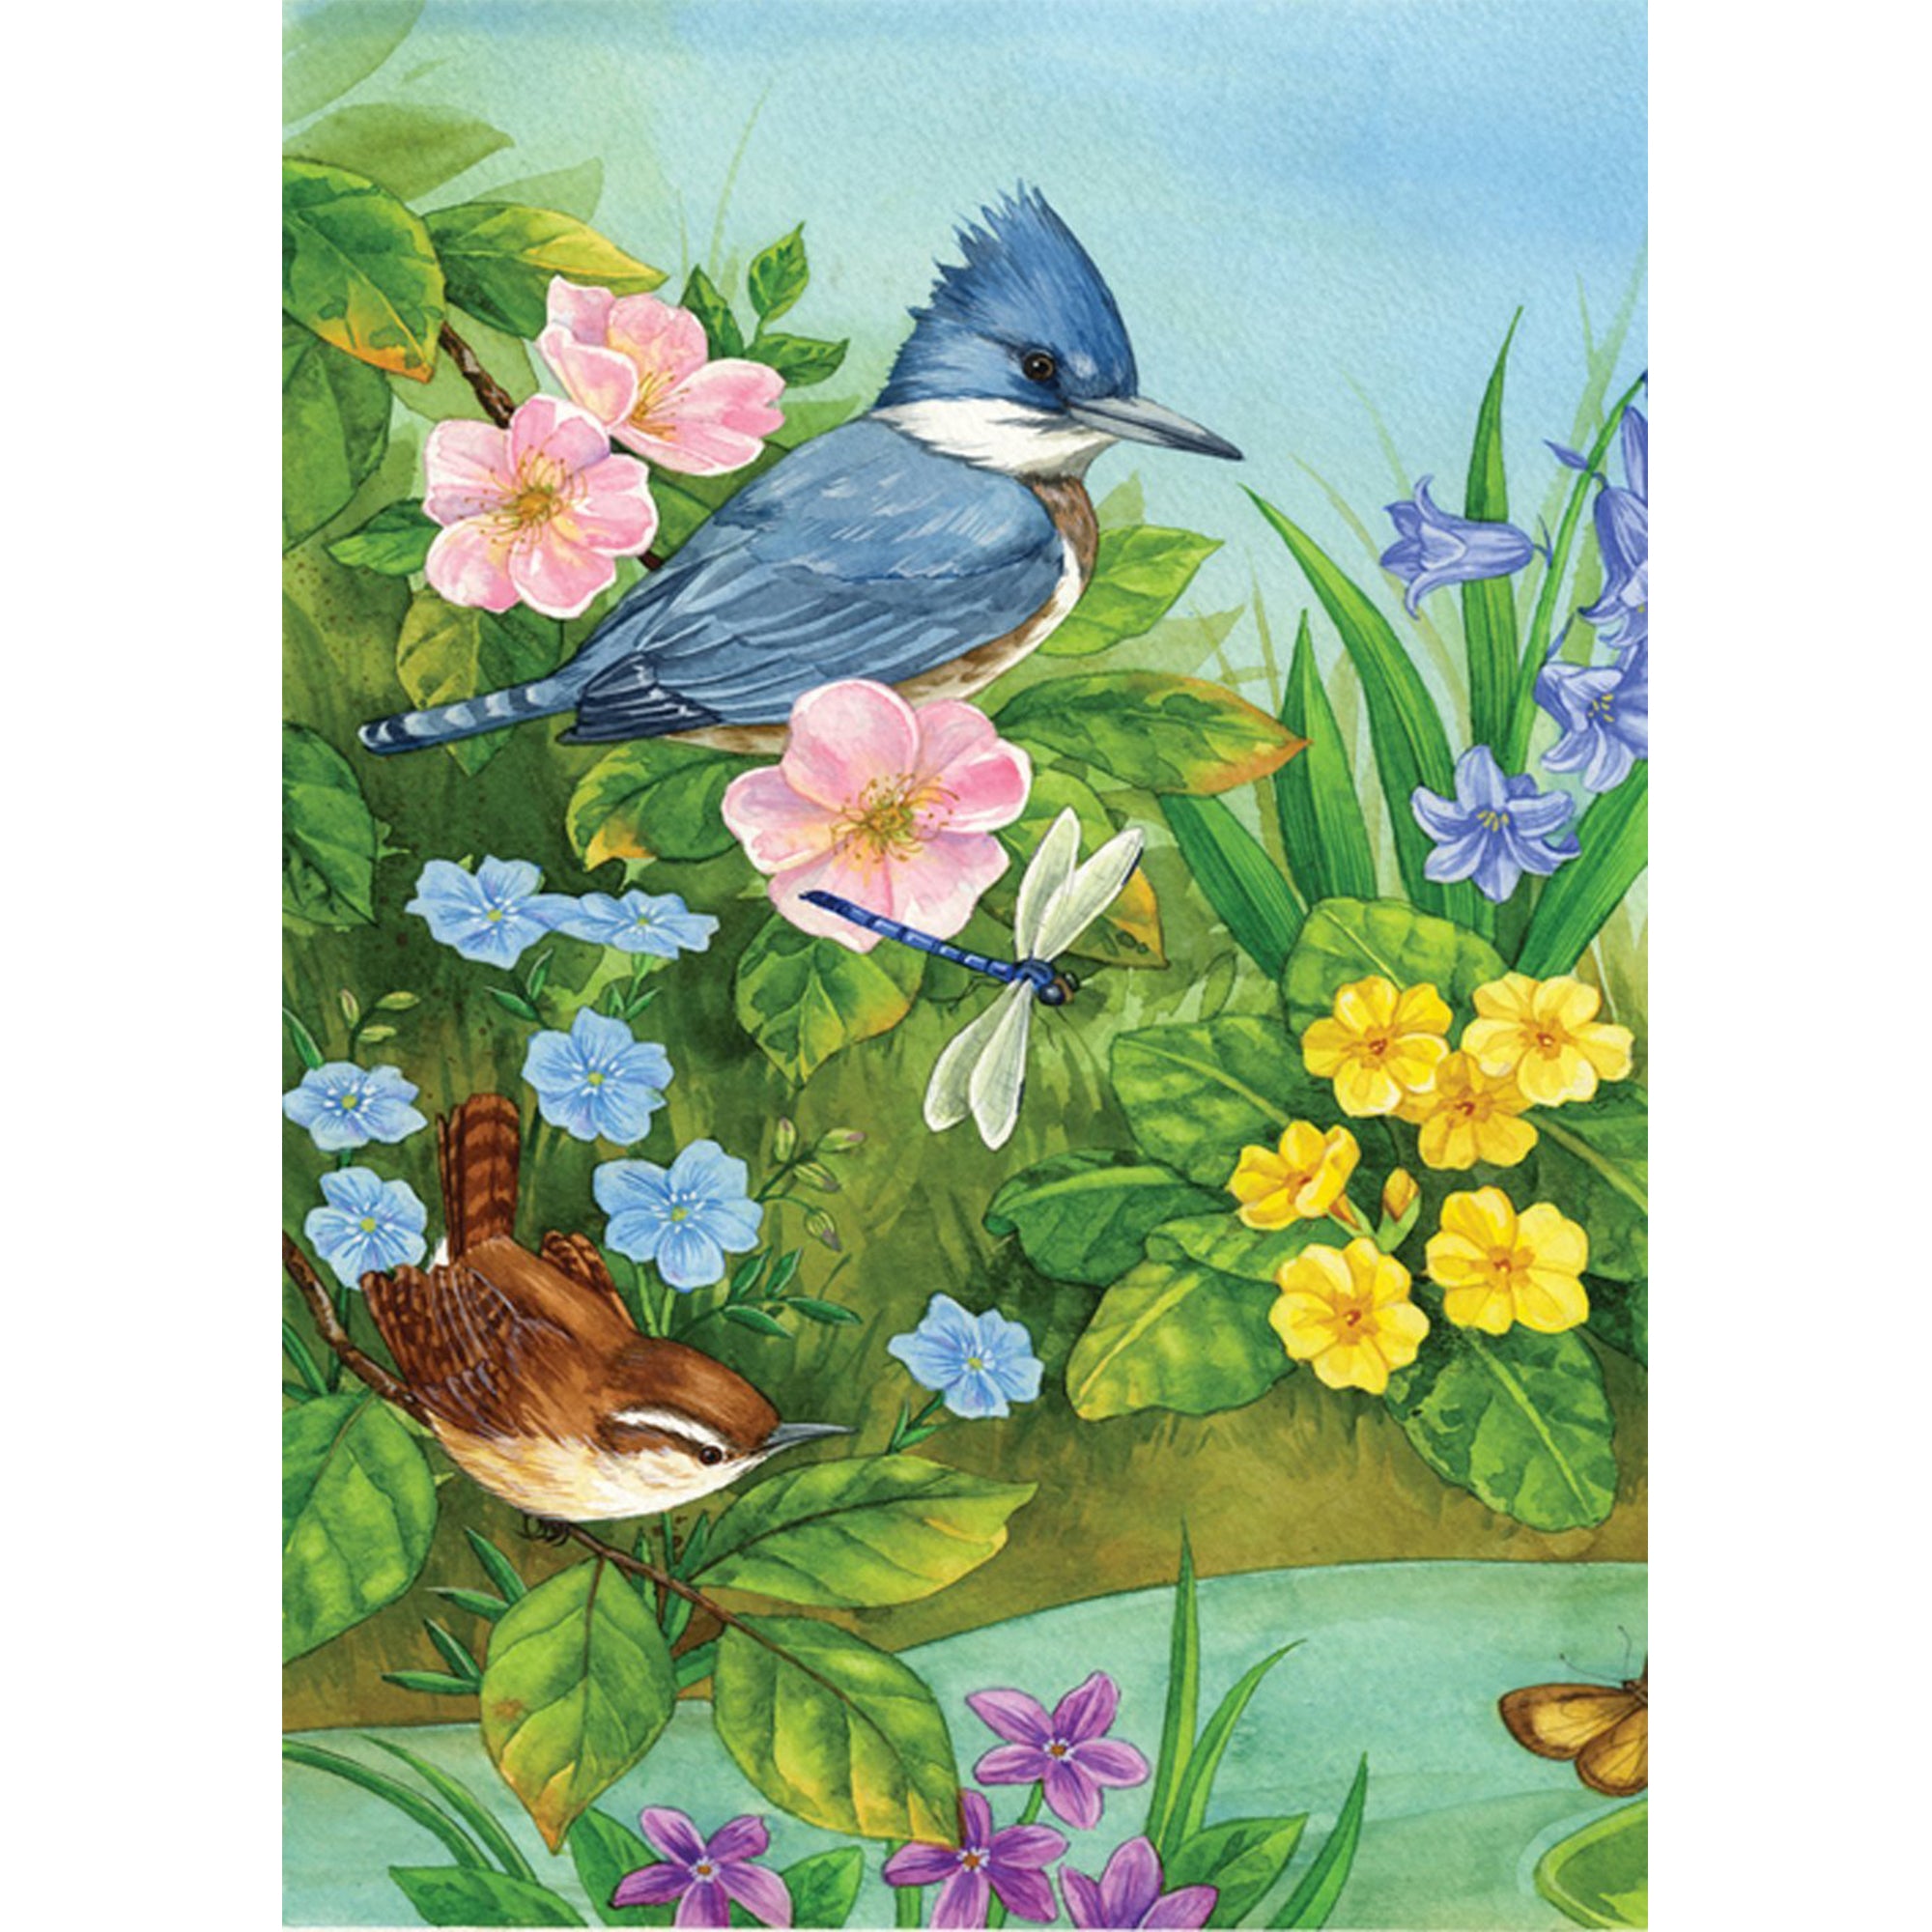 Toland Kingfisher & Friends Garden Flag